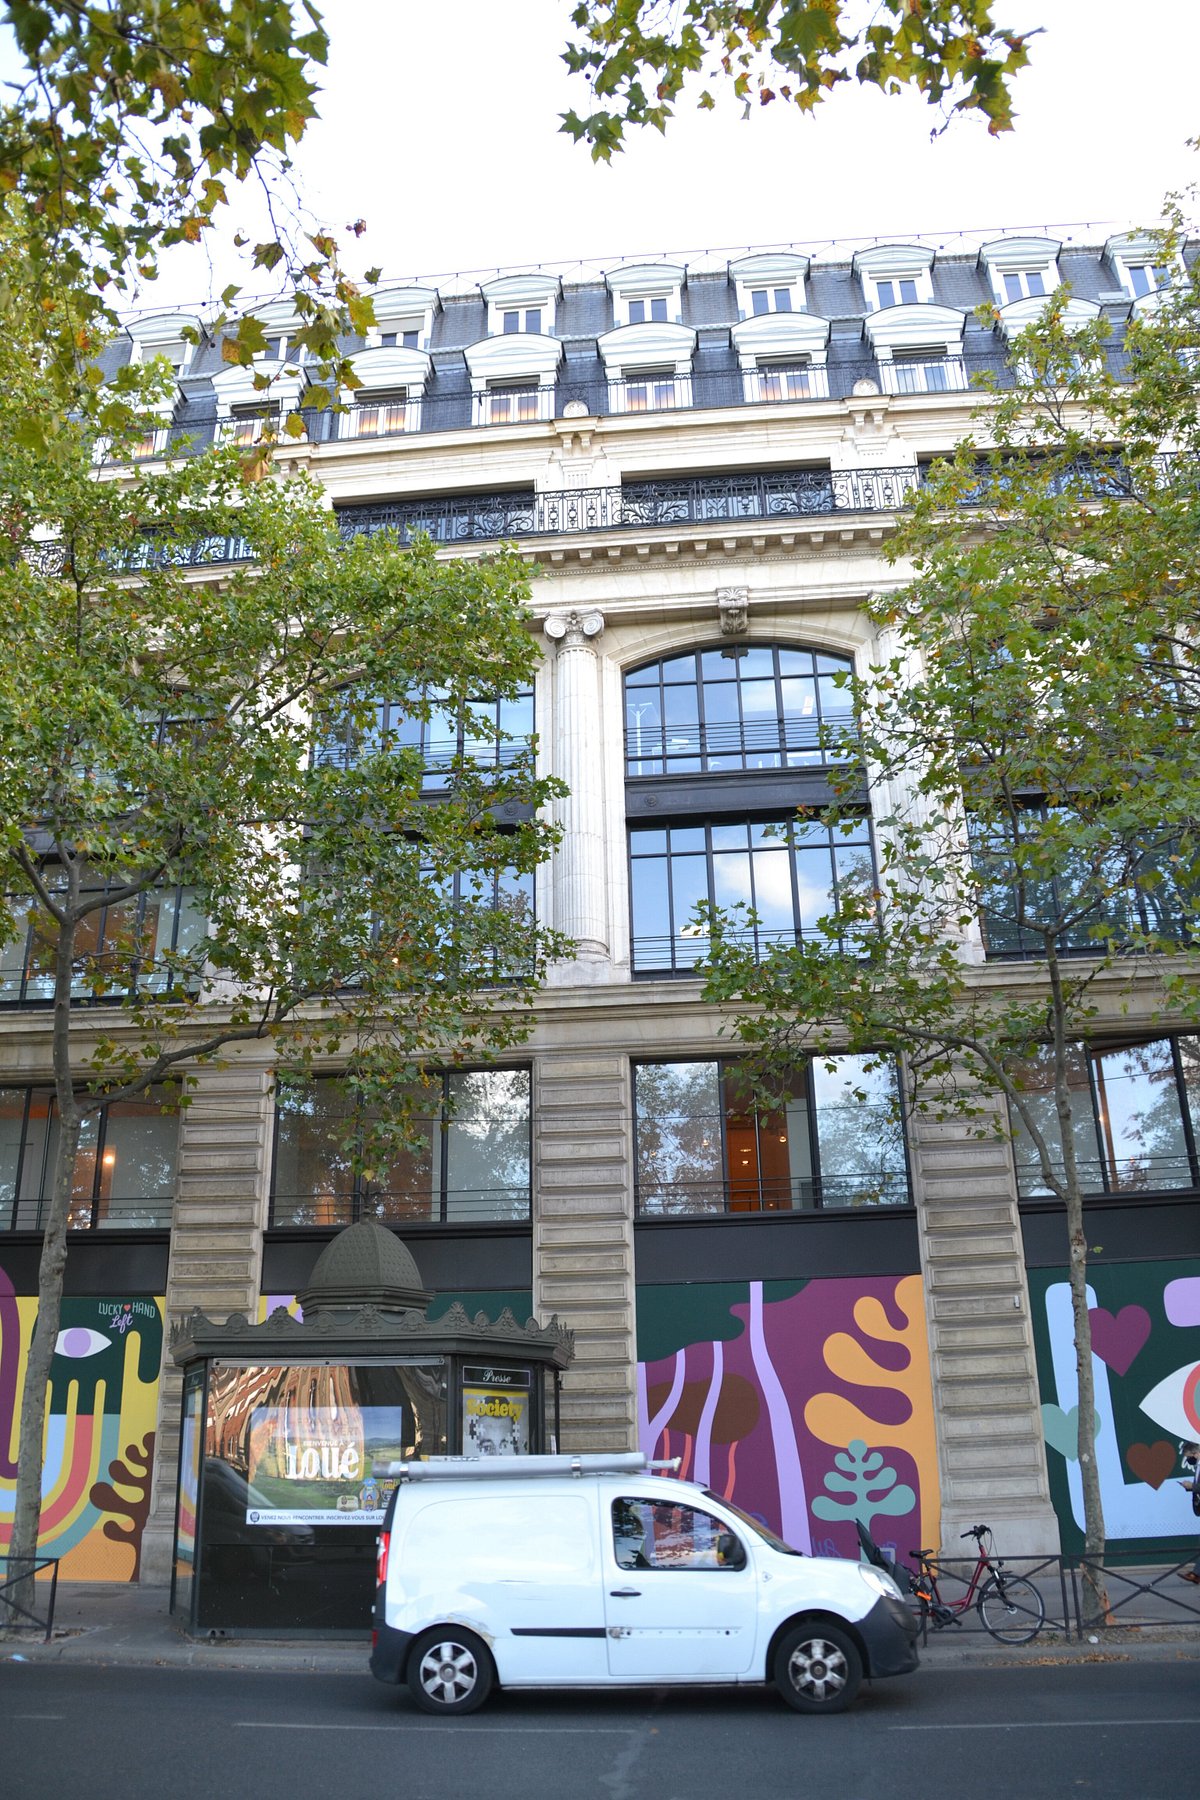 Louis Vuitton Maison Champs-Élysées Store in Paris, France